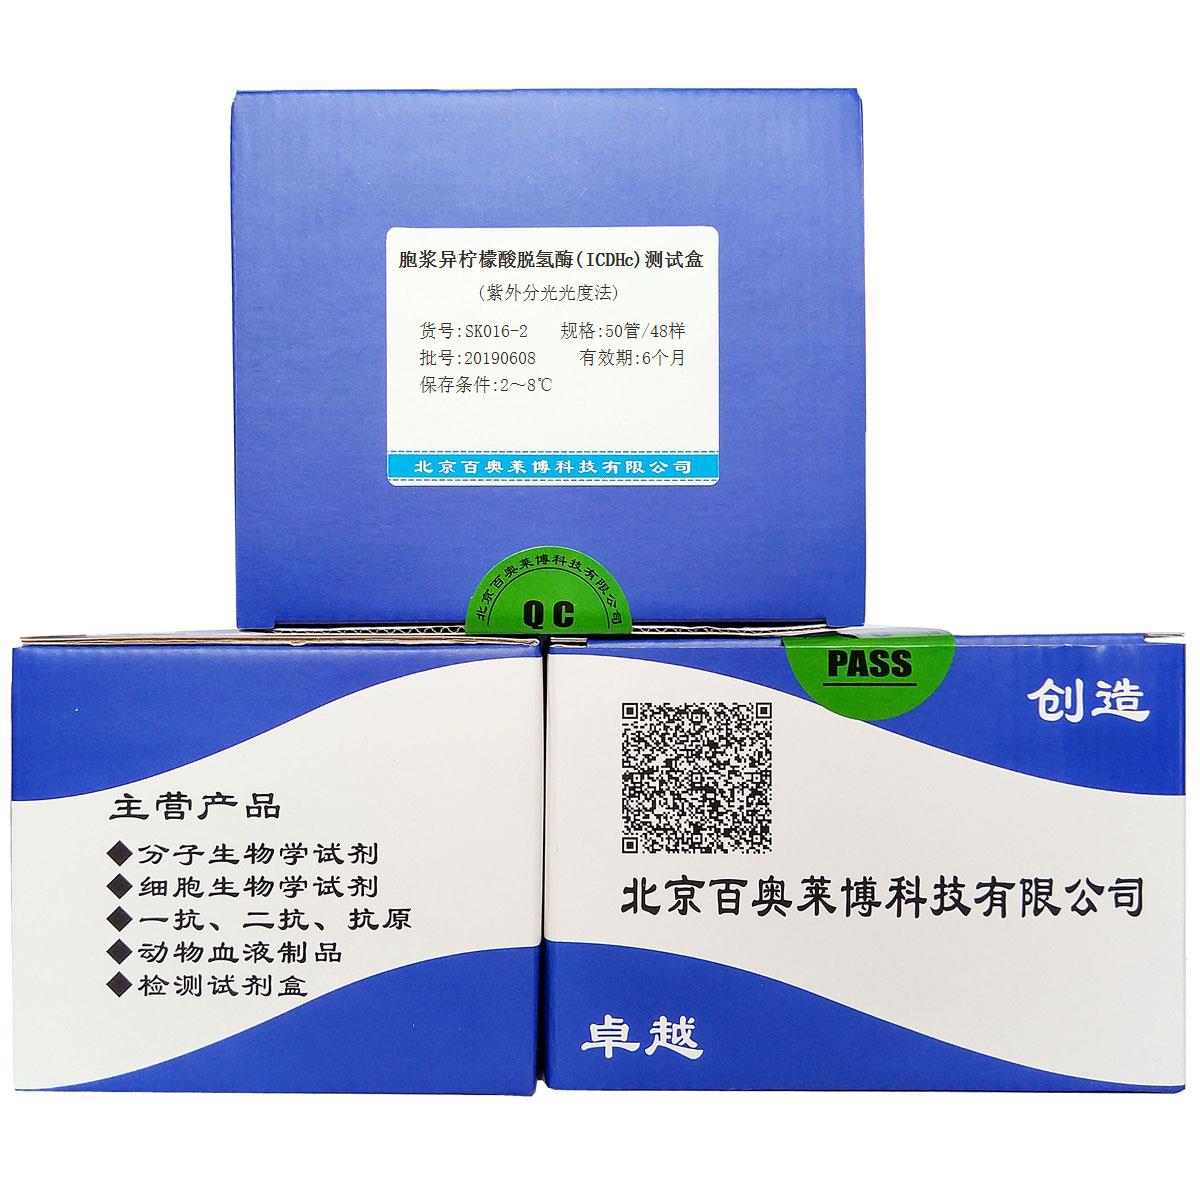 胞浆异柠檬酸脱氢酶(ICDHc)测试盒(紫外分光光度法)